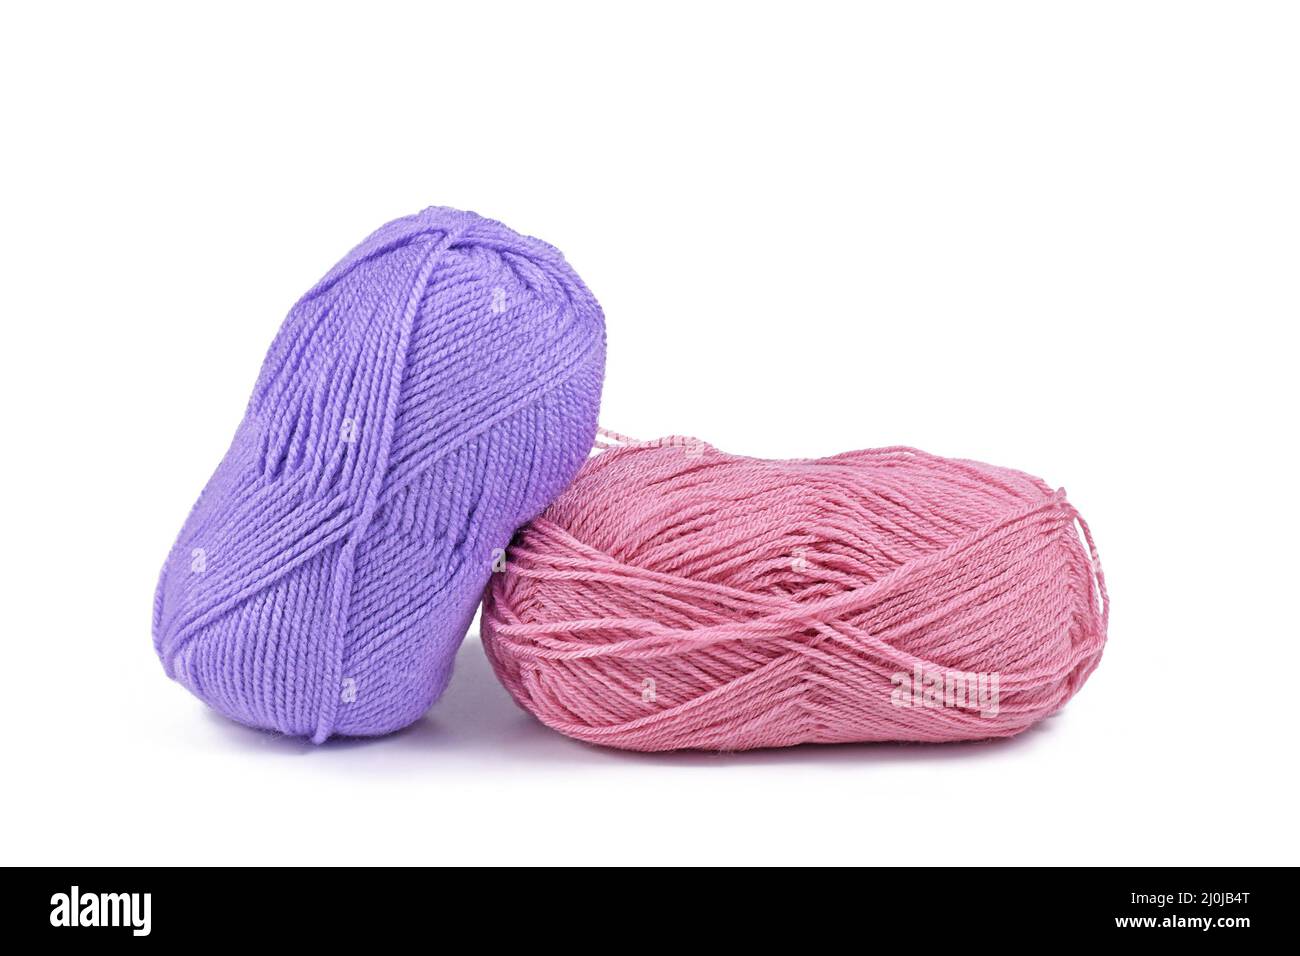 Boules de laine rose et violette sur fond blanc Banque D'Images